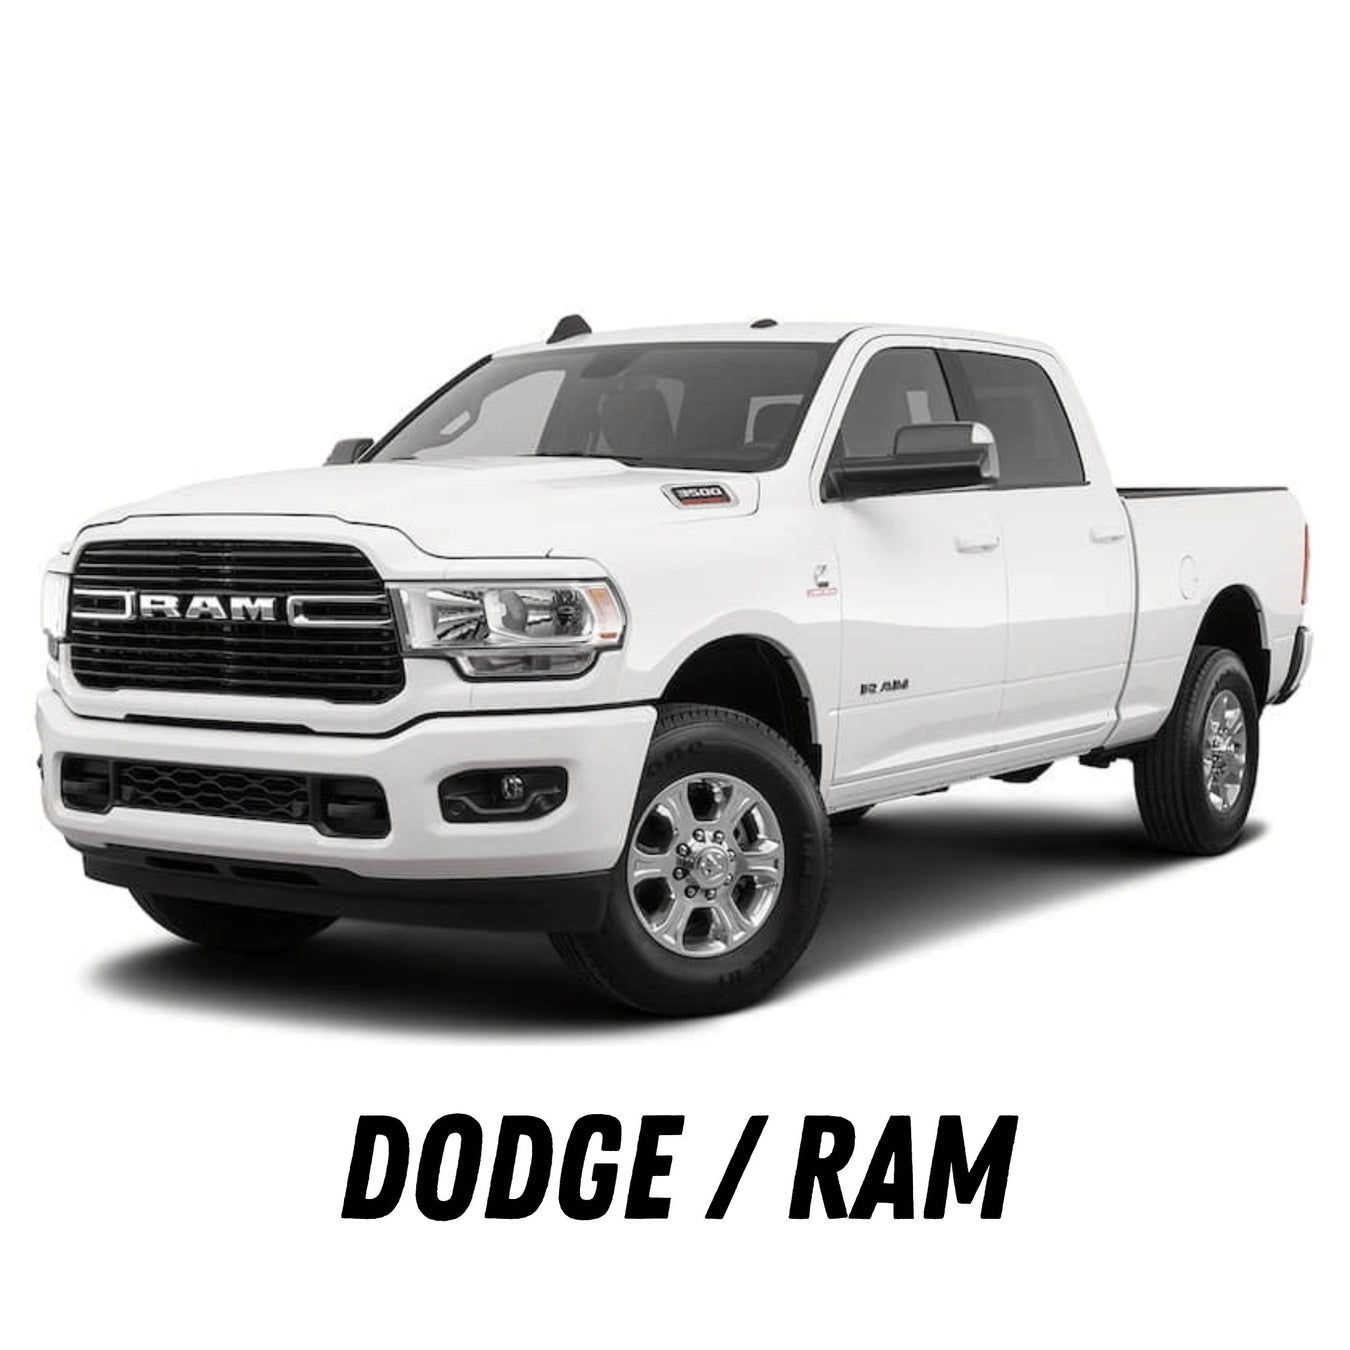 Dodge-Ram 5.9 and 6.7 Fuel Injectors